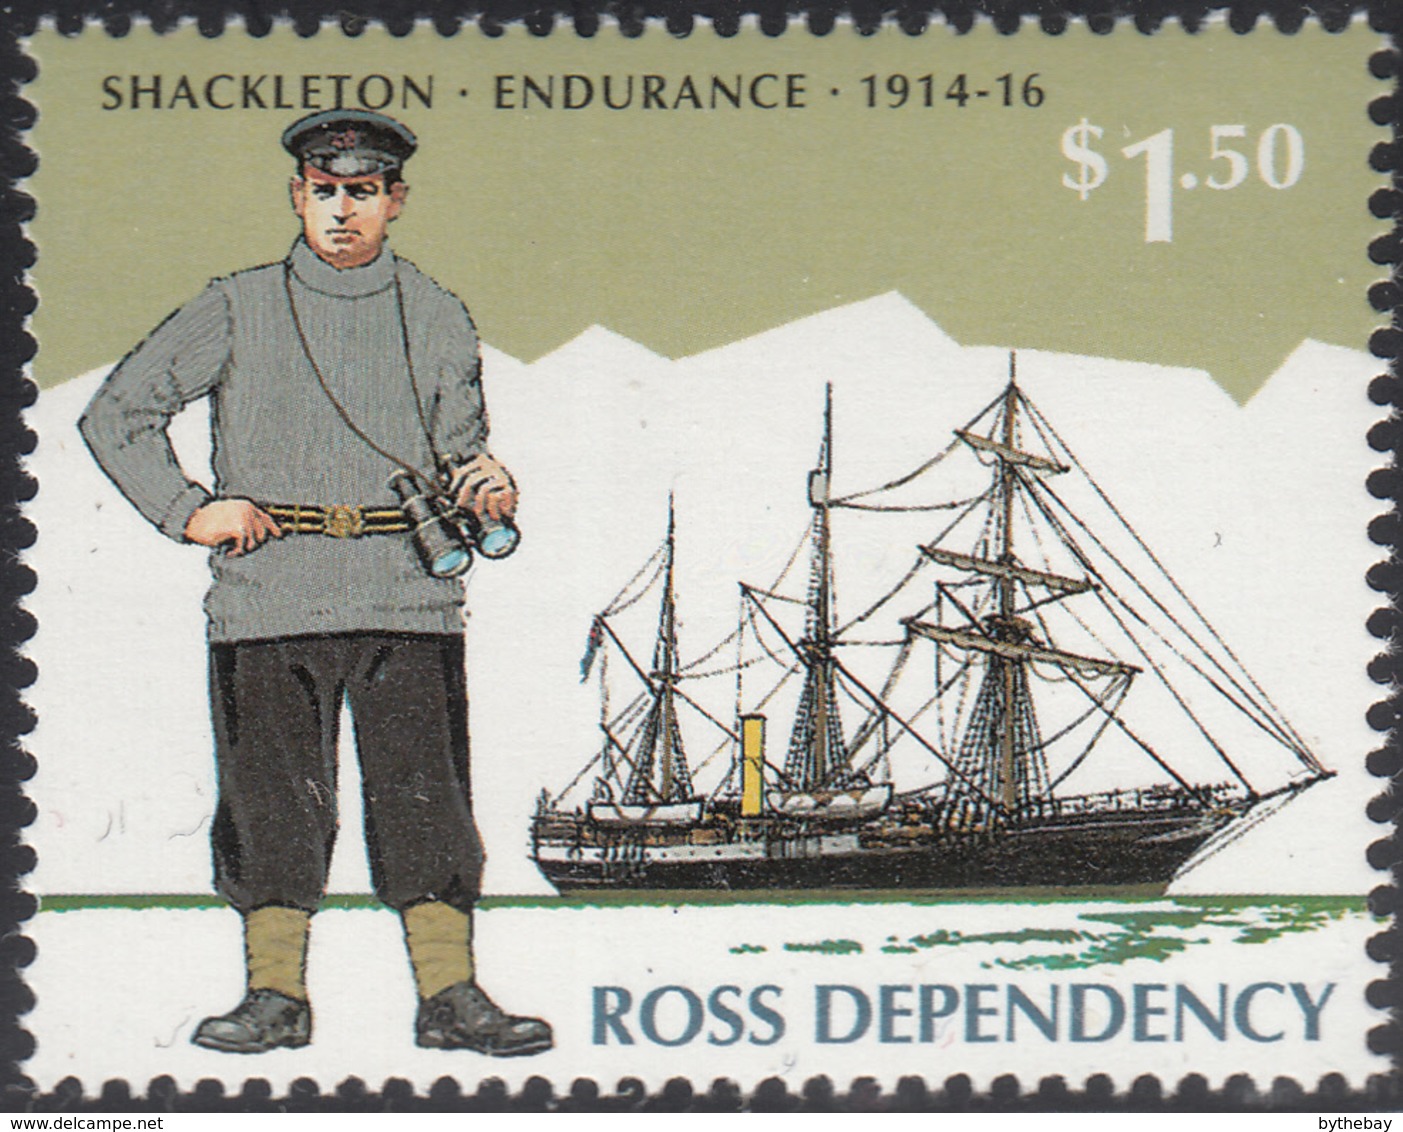 Ross Dependency 1995 MNH Sc L35 $1.50 Shackleton, Endurance 1914-16 - Ongebruikt